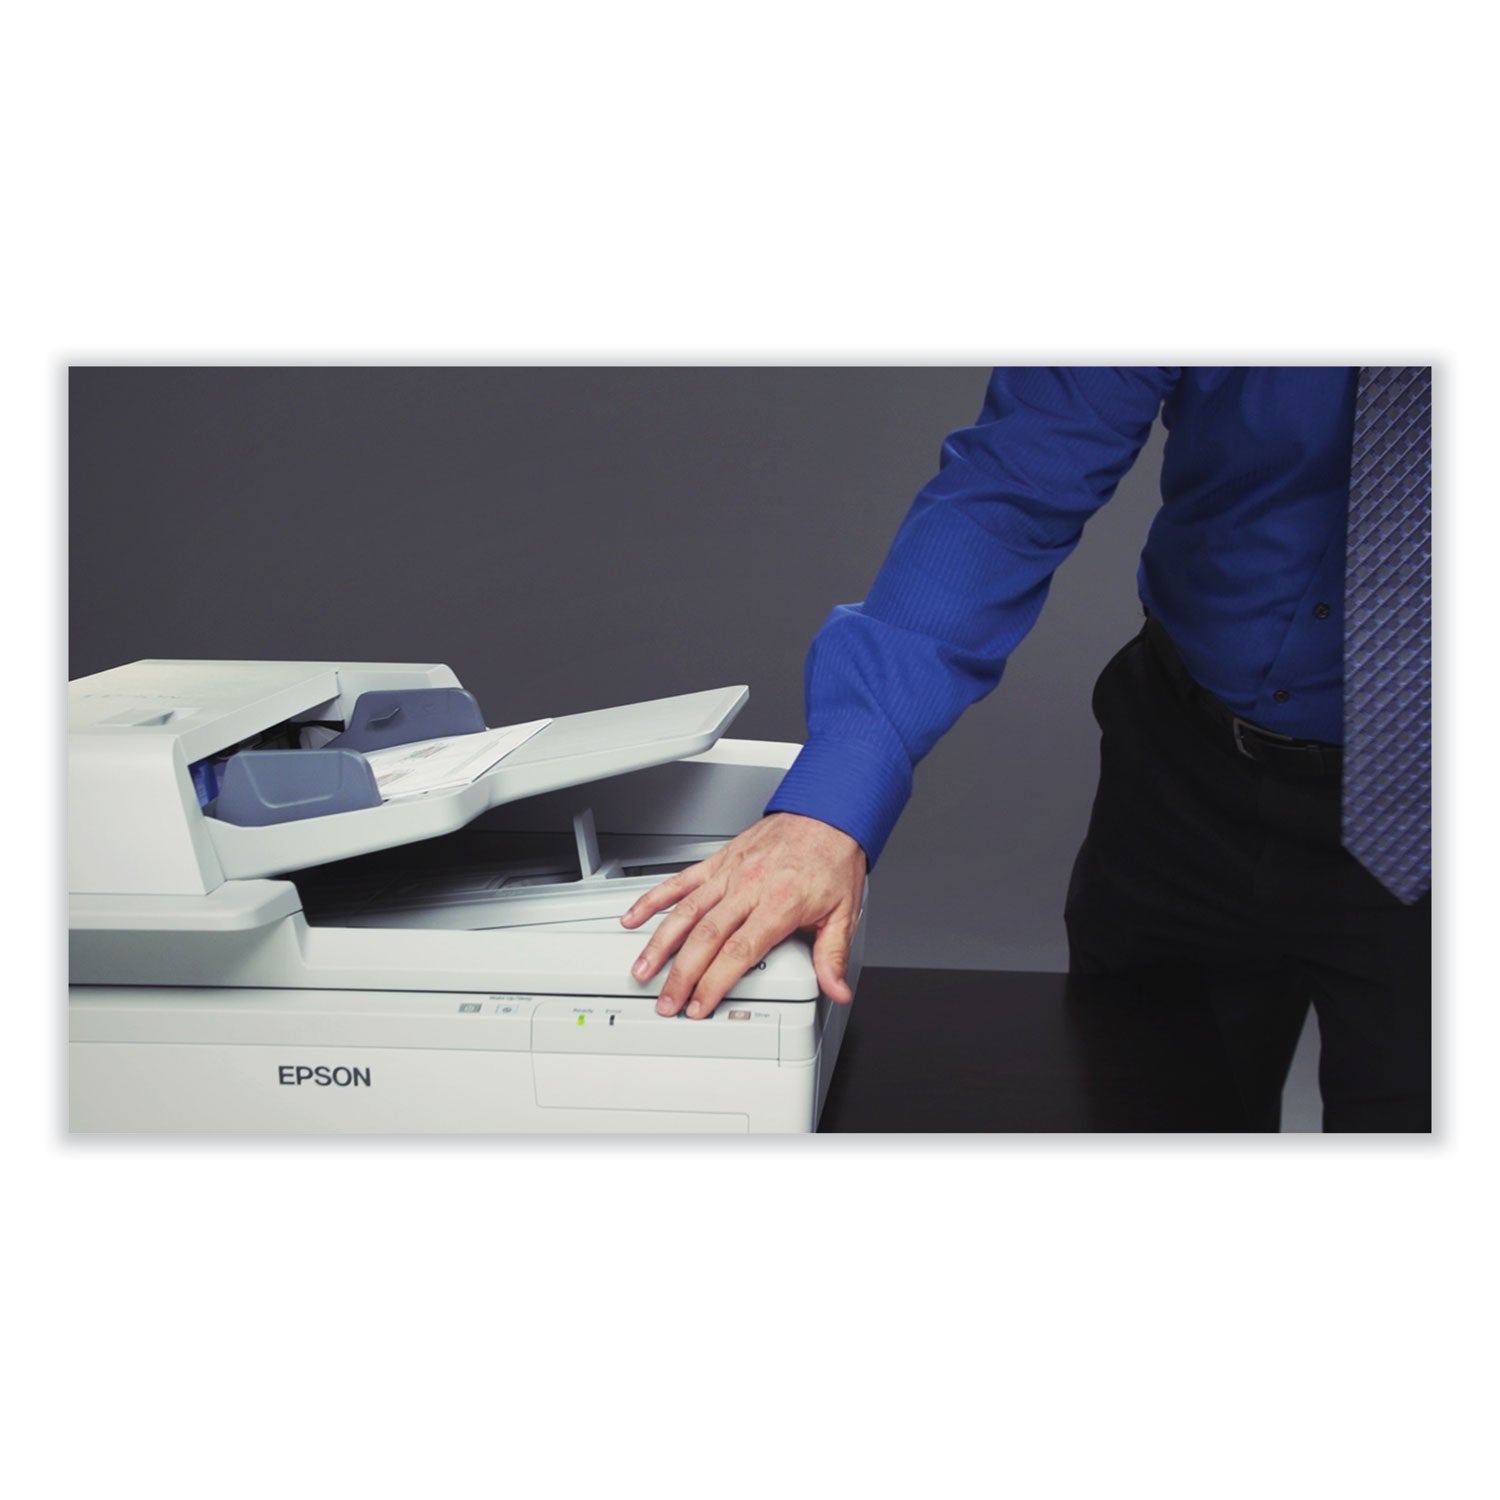 workforce-ds-70000-scanner-600-dpi-optical-resolution-200-sheet-duplex-auto-document-feeder_epsb11b204321 - 5